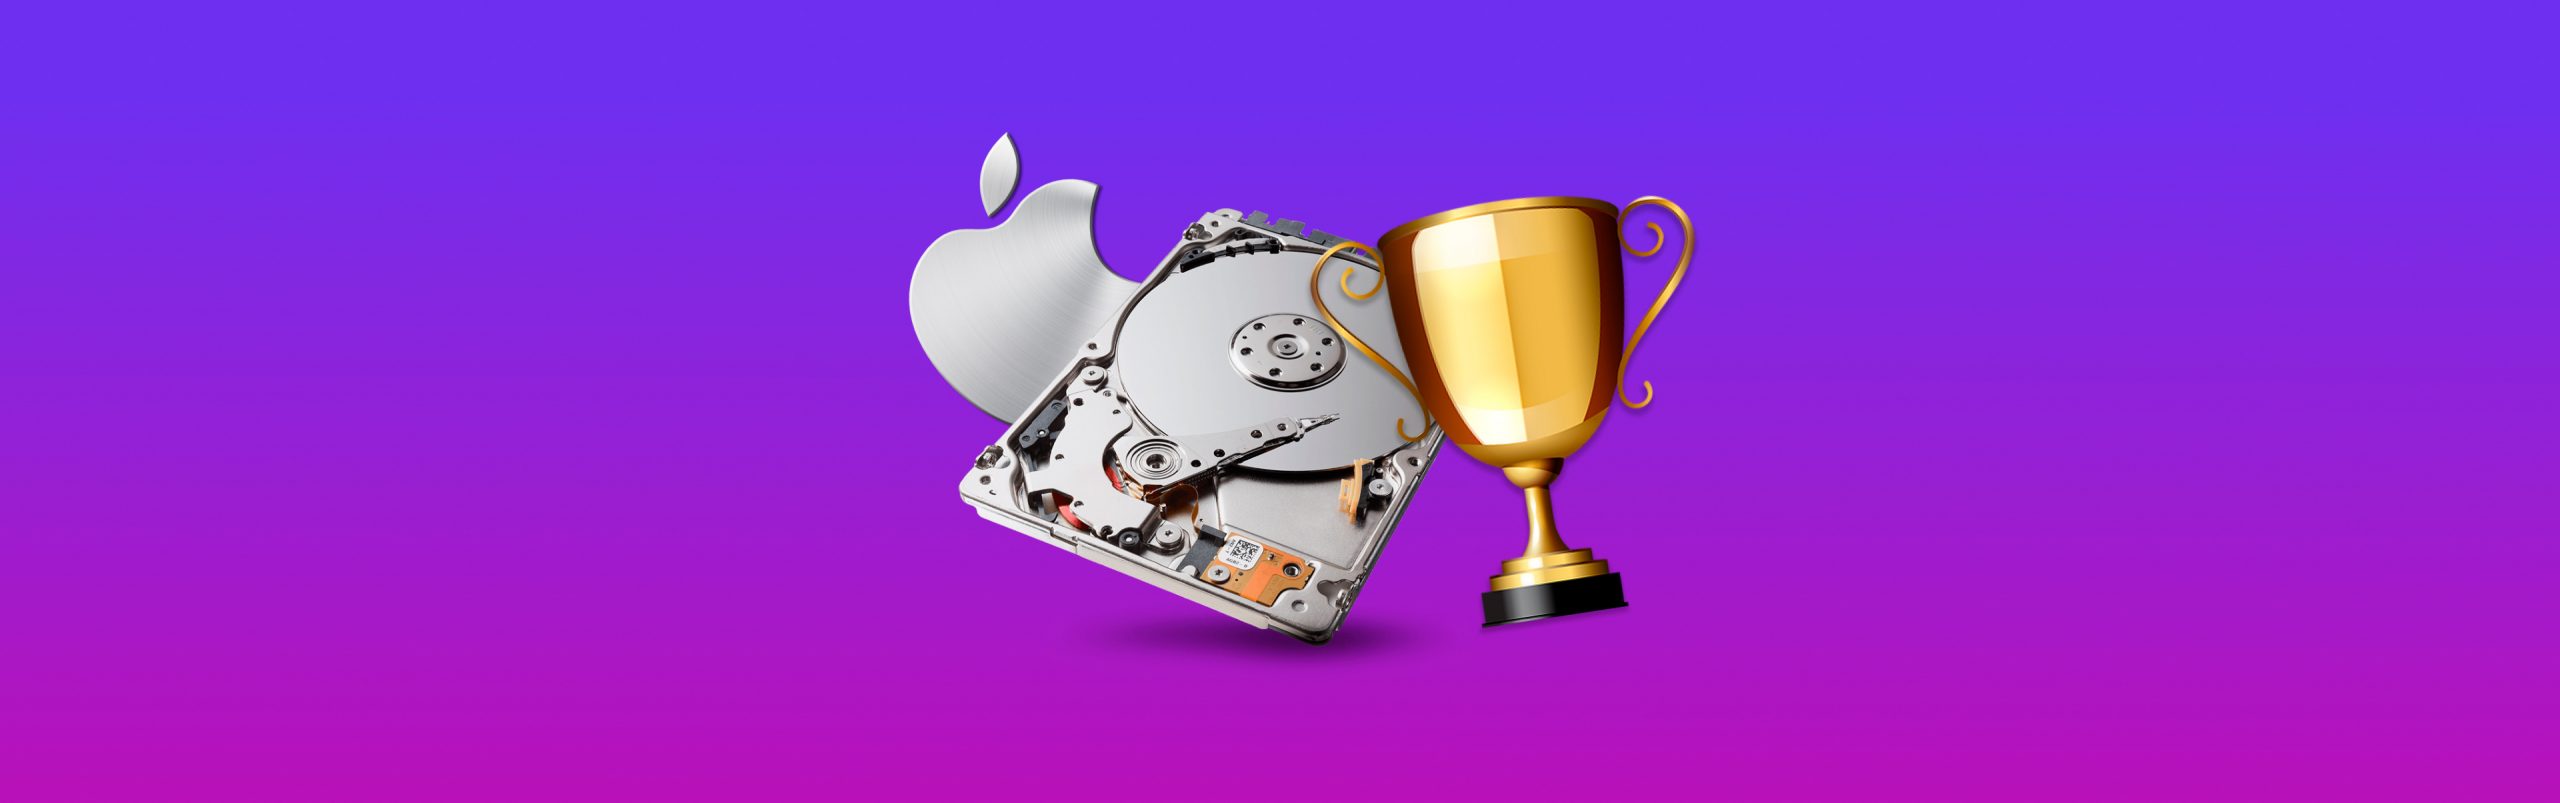 free sotfware for mac hard drive repair